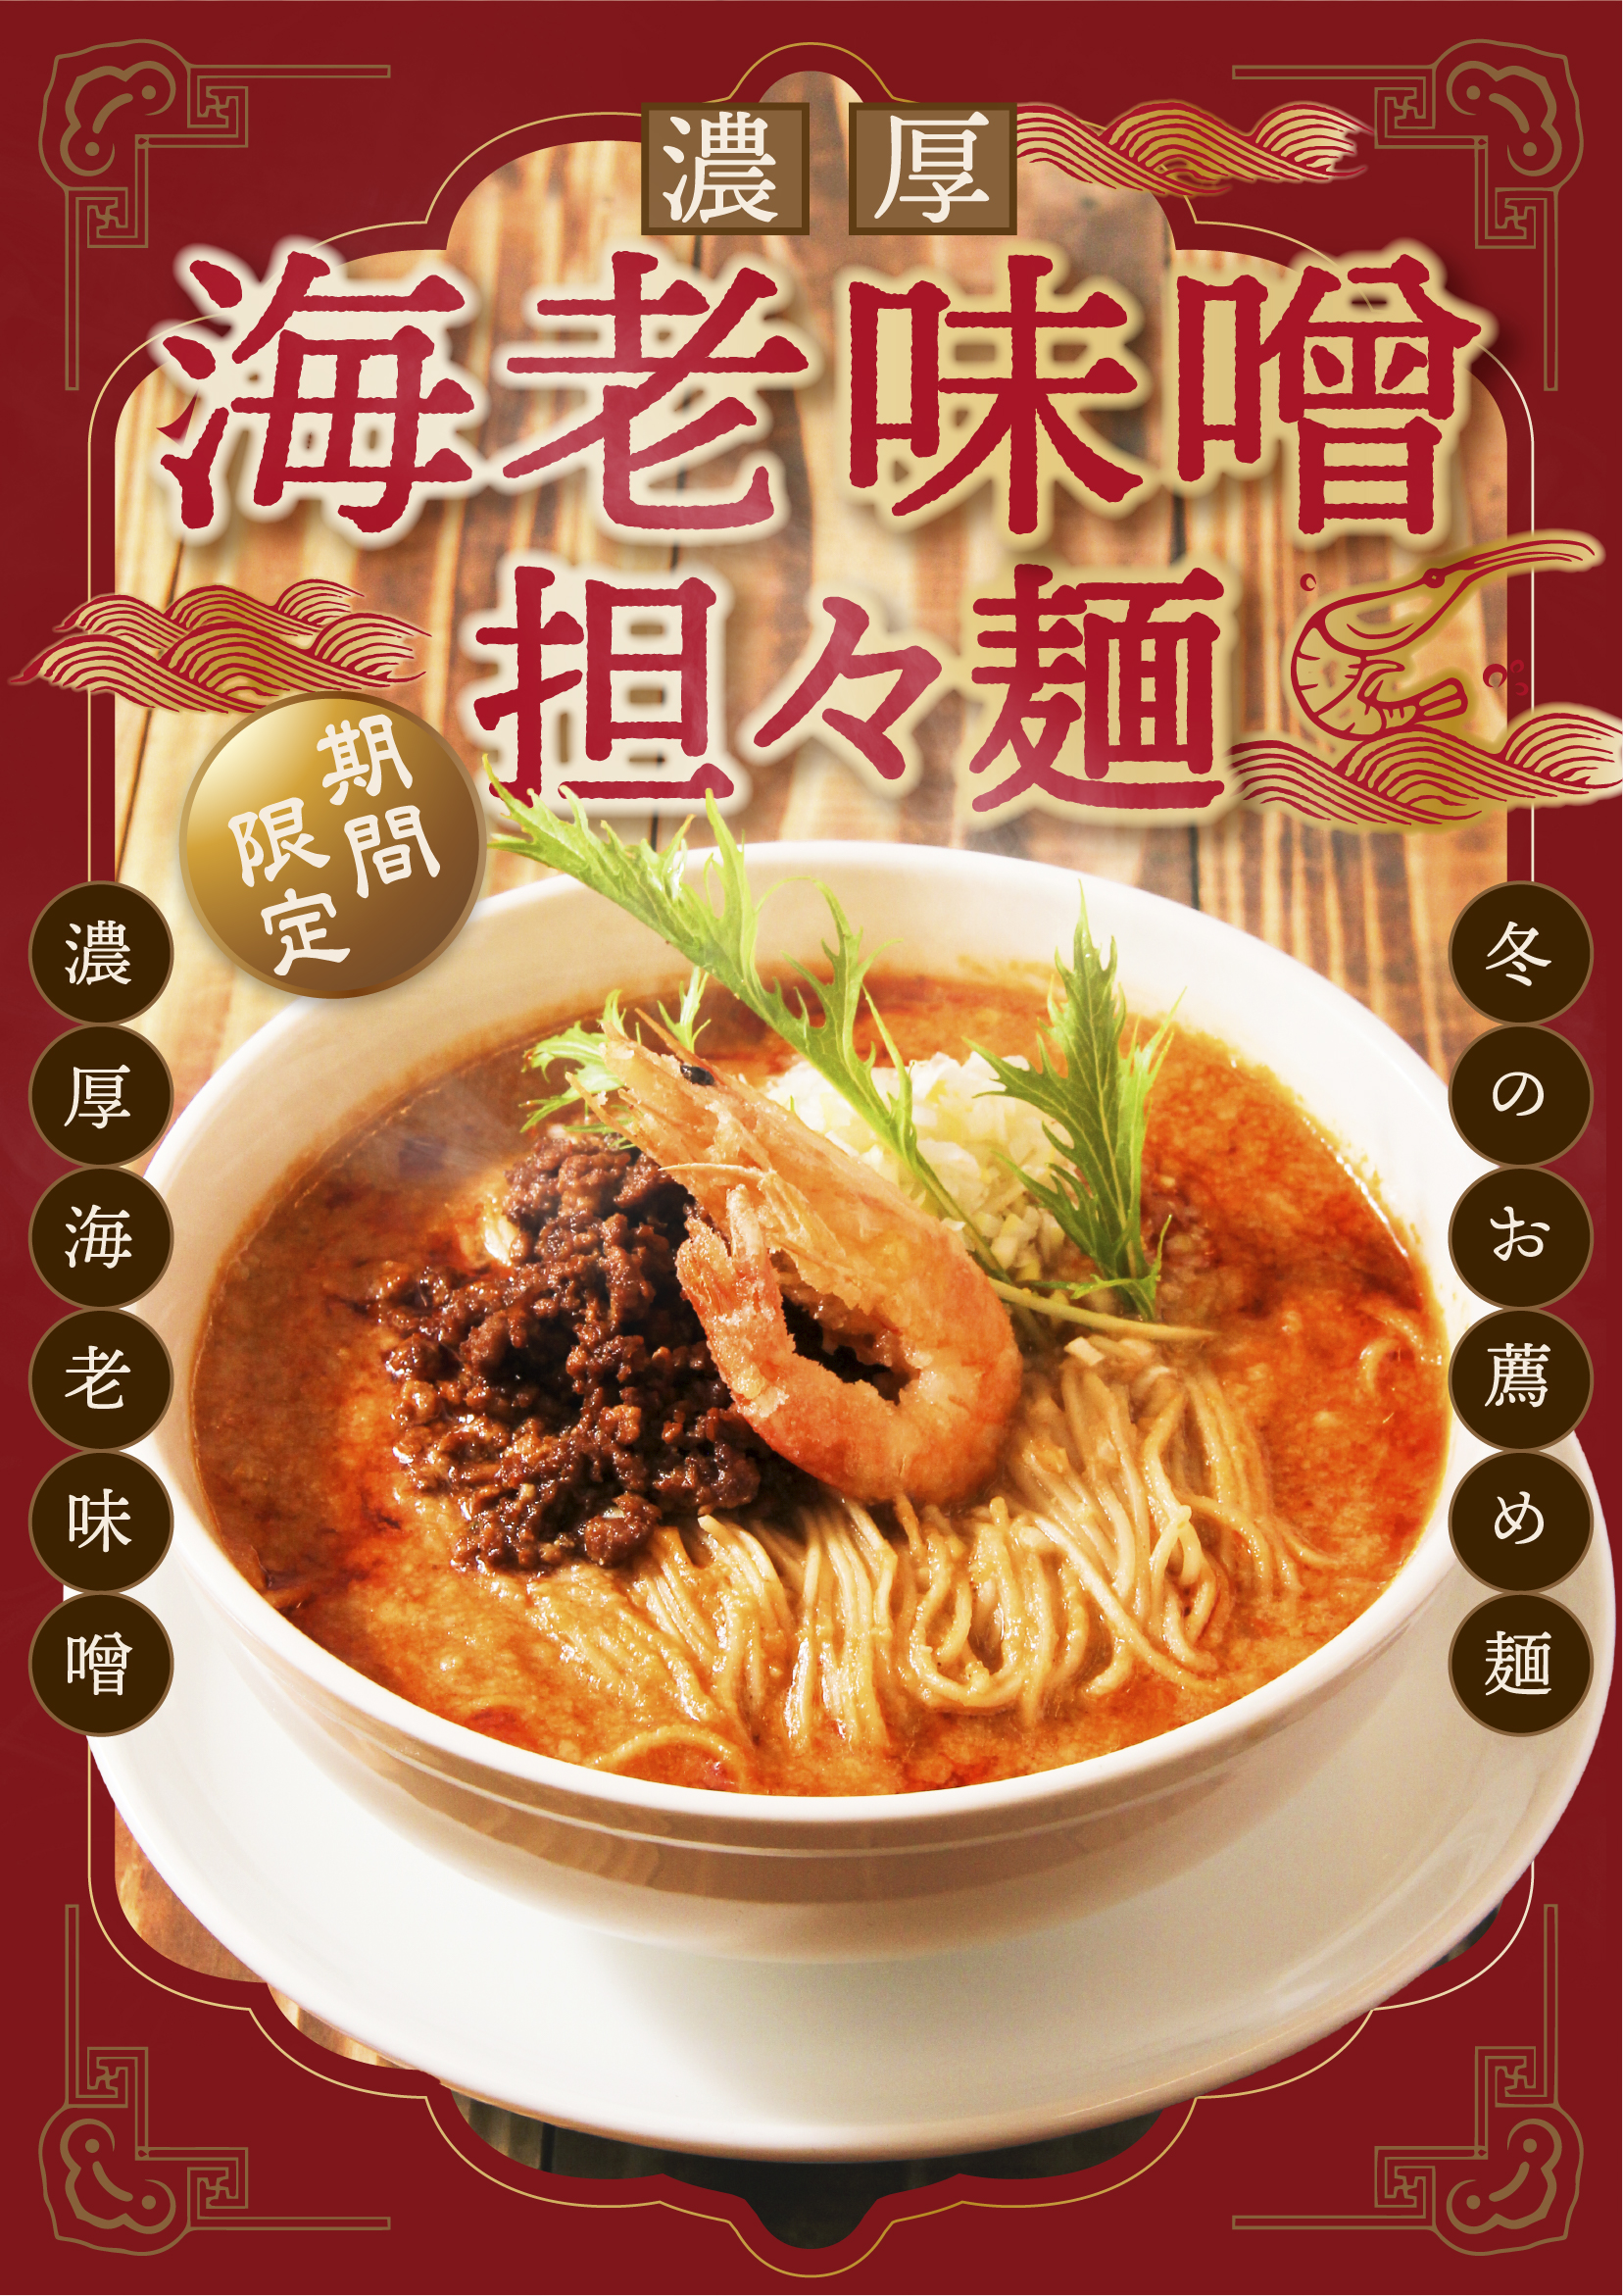 12月1日(金)期間限定で販売開始！海老味噌坦々麺